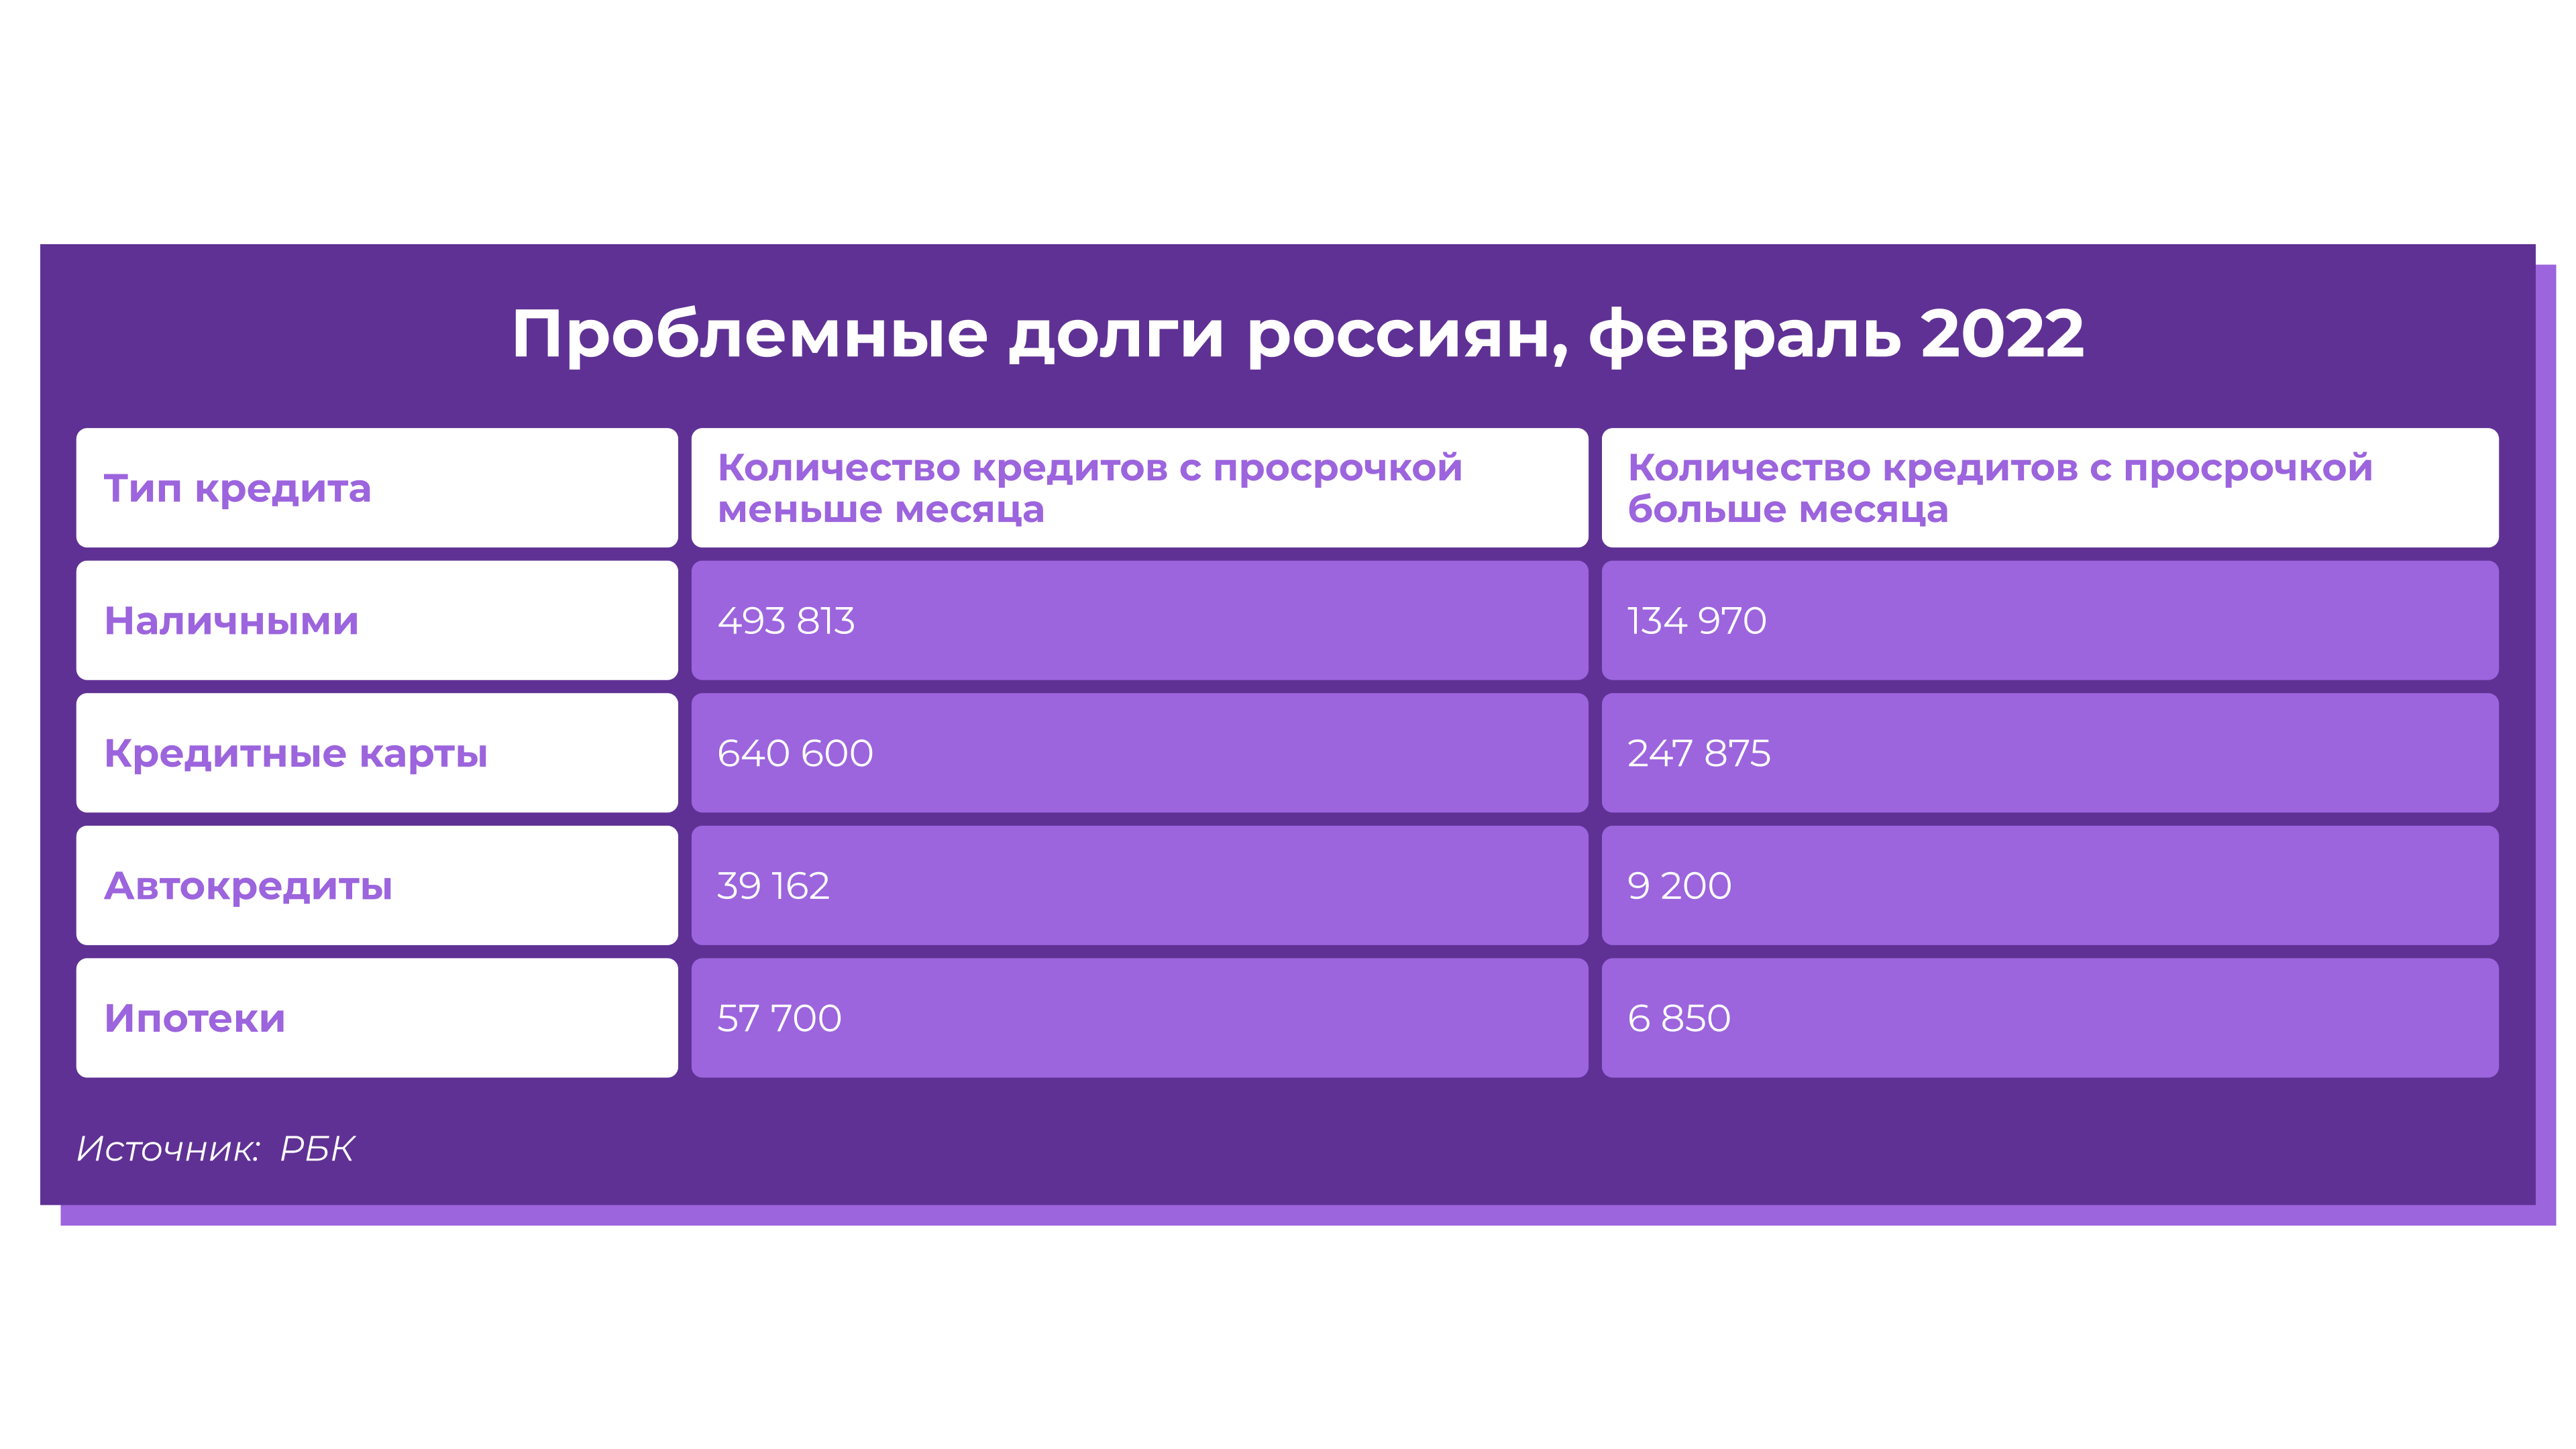 Инфографика: Проблемные долги россиян, февраль 2022 года. Цифры в столбиках. Источник: https://www.rbc.ru